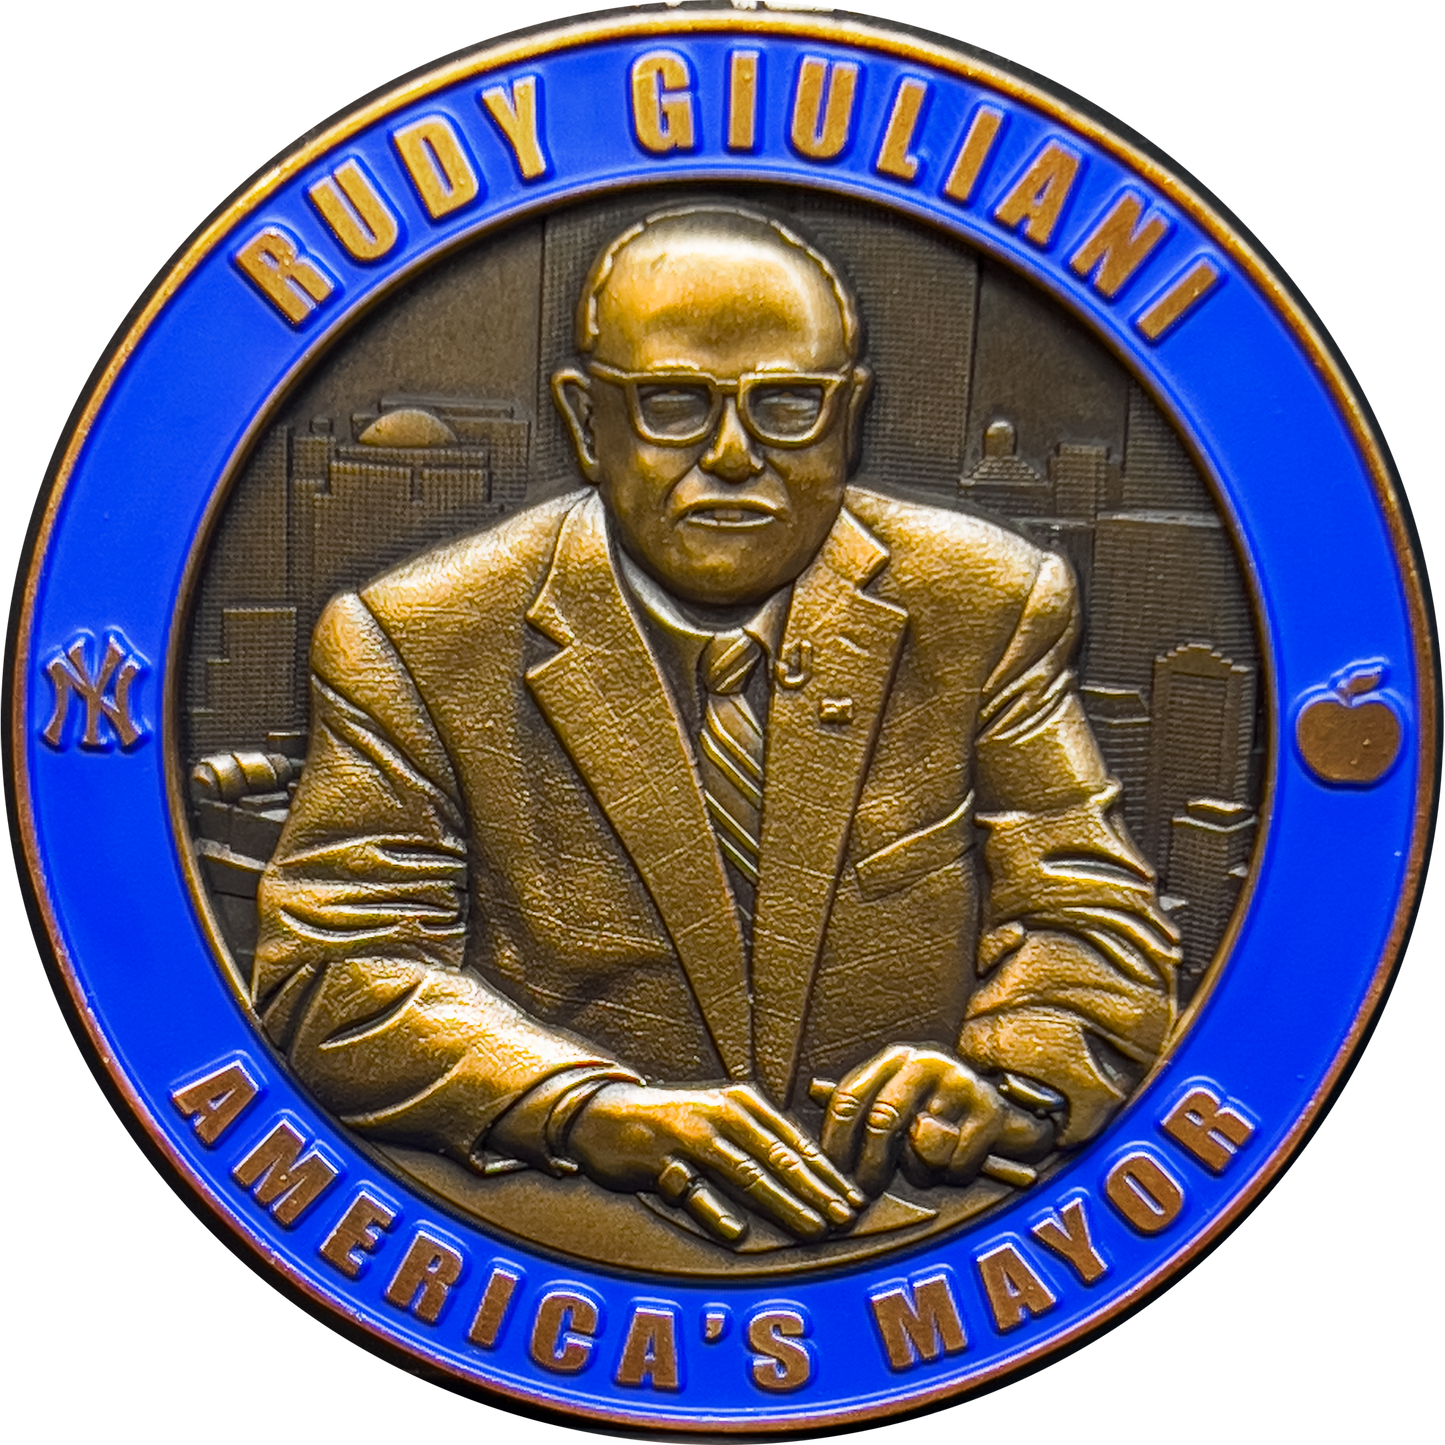 GL7-01 Rudy Giuliani America's Mayor Challenge Coin NYPD NYC Mayor 9/11